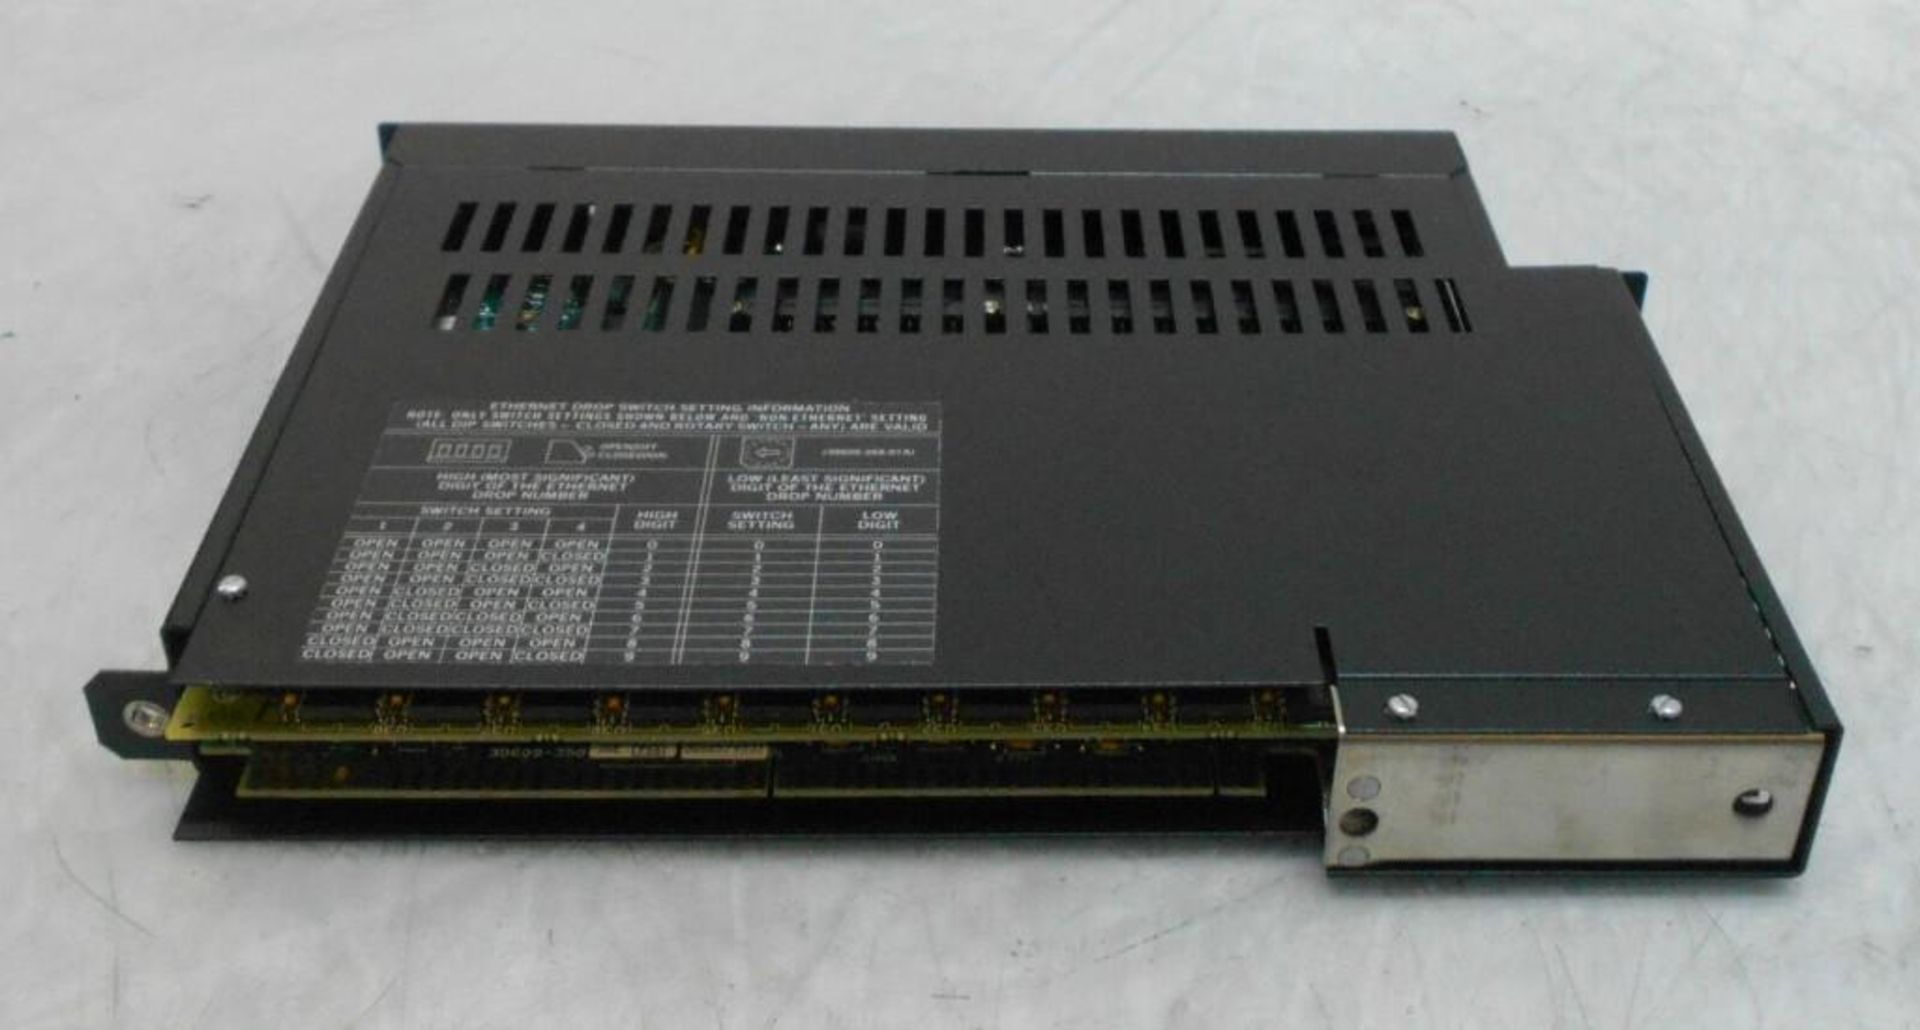 NEW Square D Sy/Max Processor Module, # 8055 SCP452 - Image 2 of 3